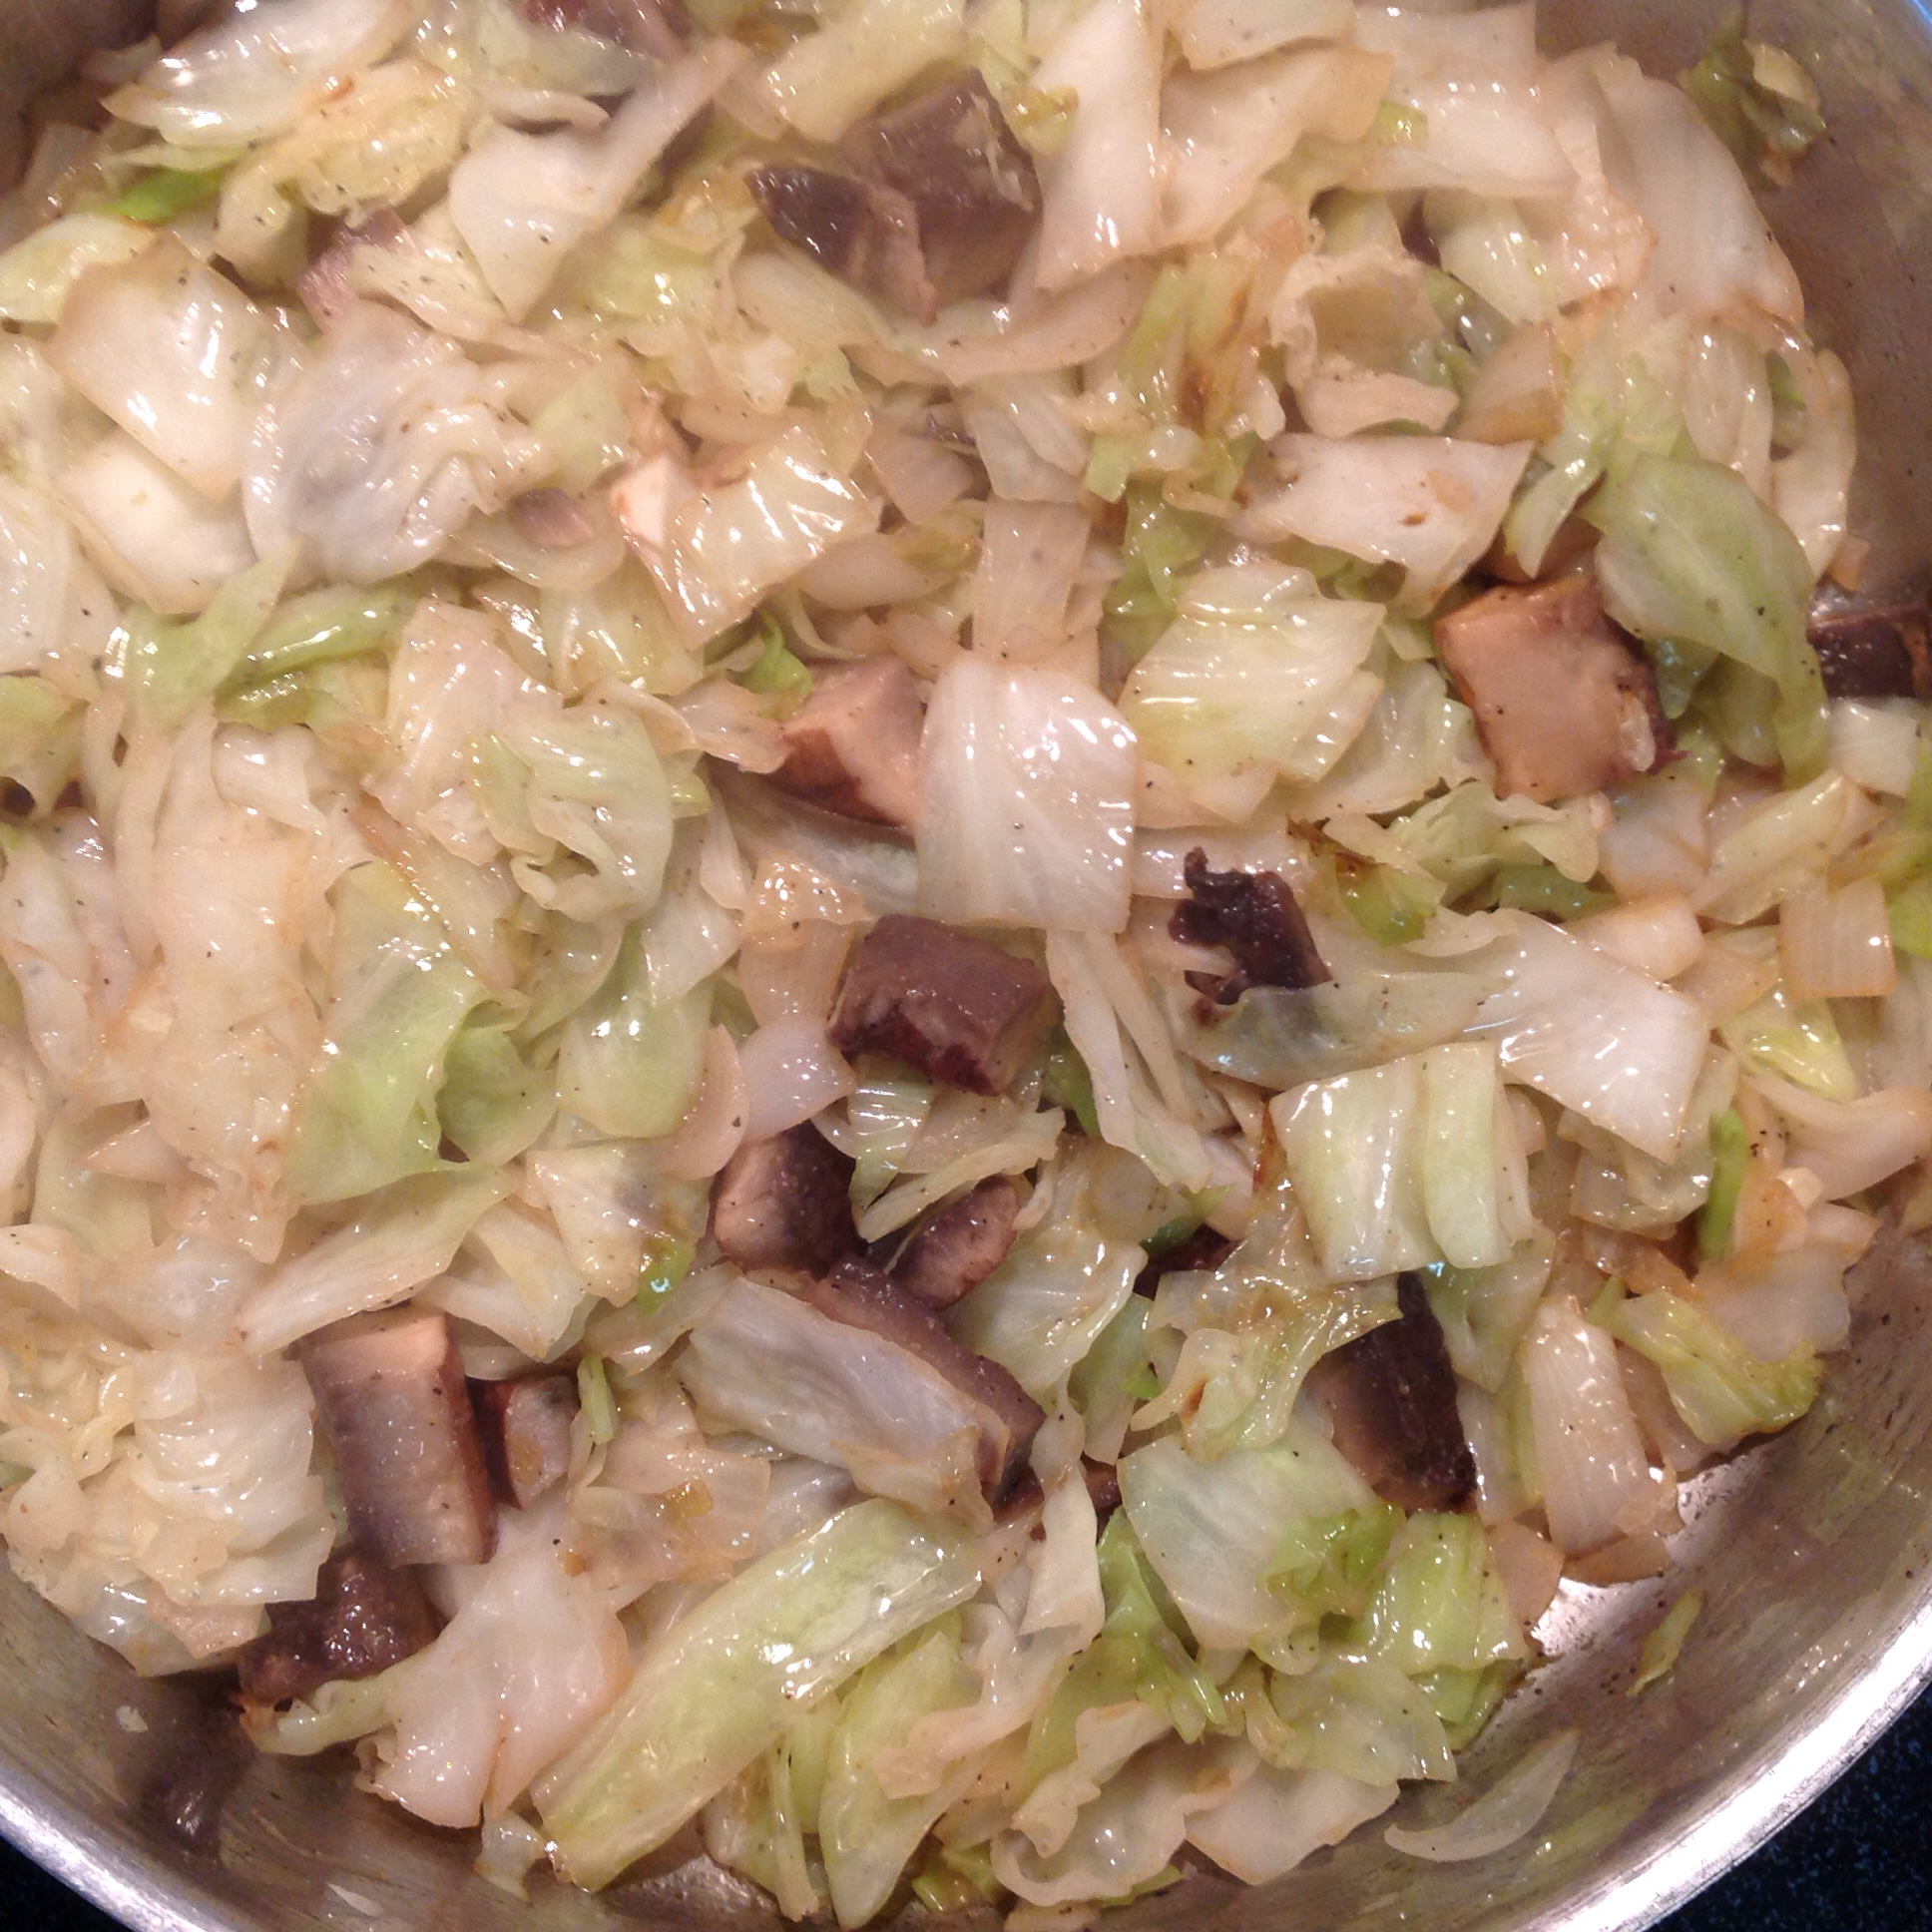 Cabbage with Portobello Mushrooms